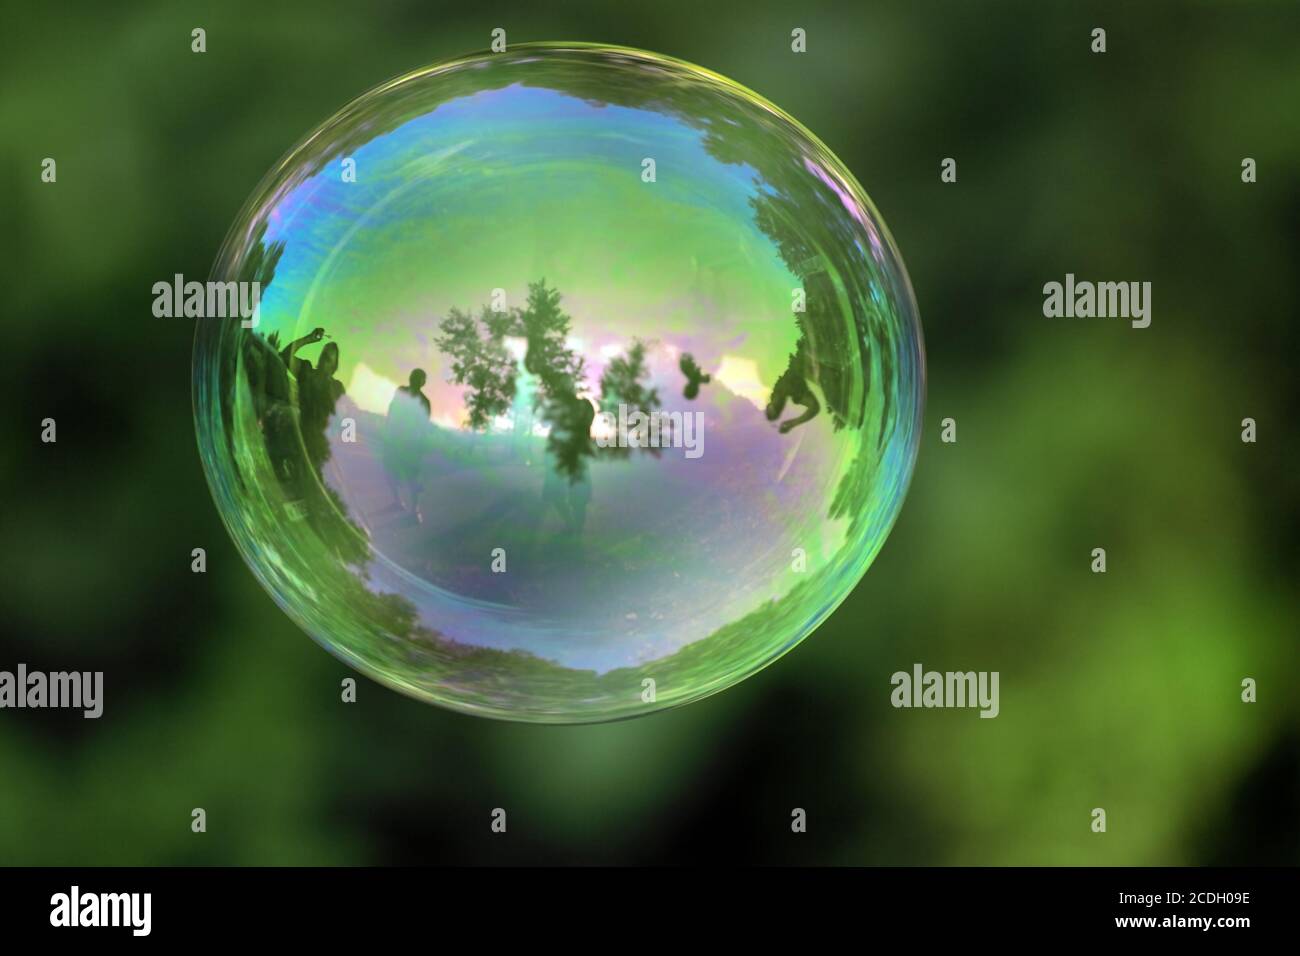 bulle transparente avec réflexions sur une organisation verte Banque D'Images